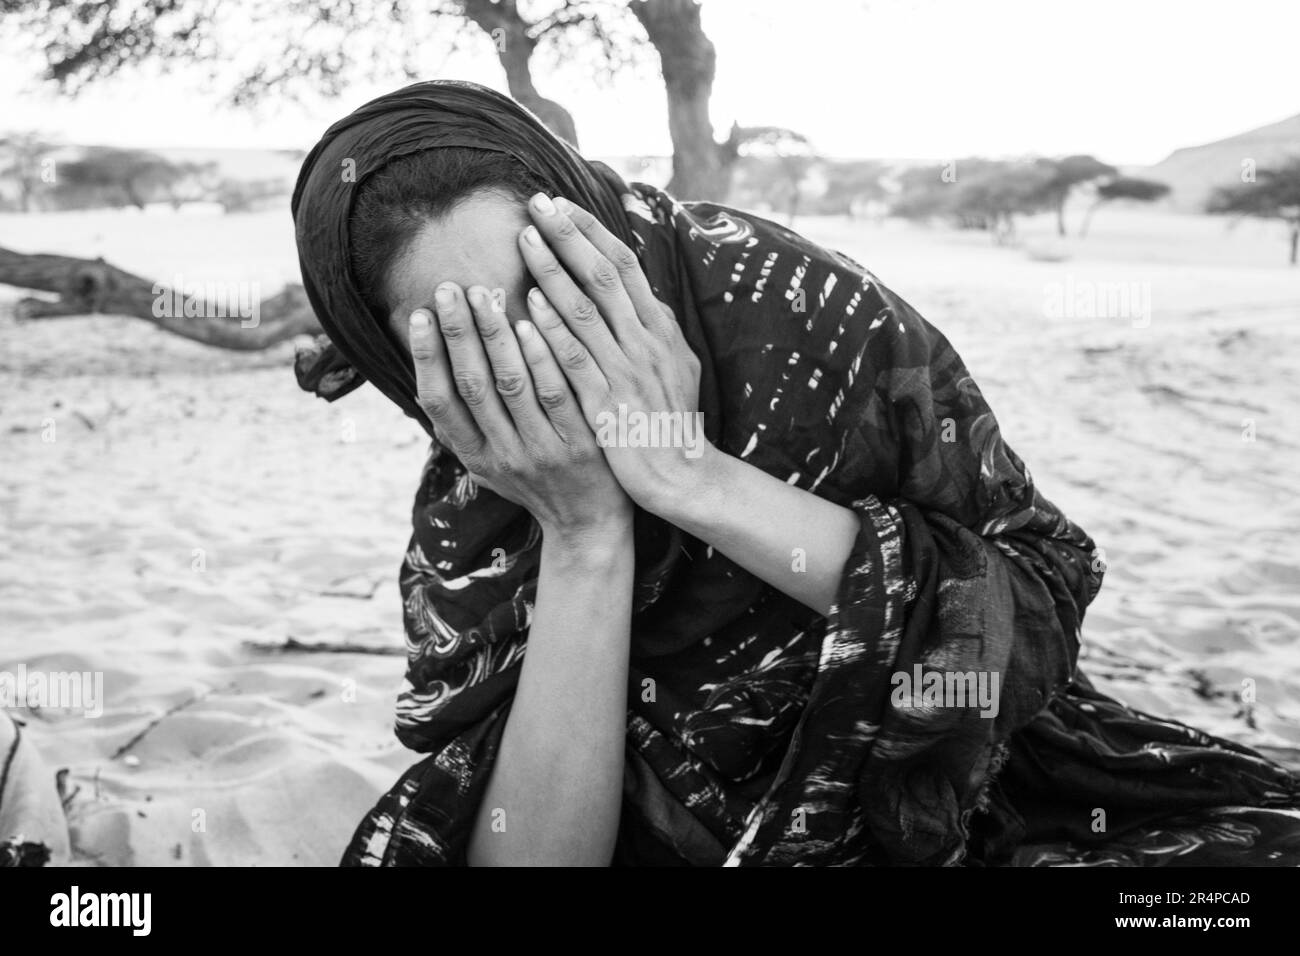 Mauritania, Adrar region, El Beyedh, portrait Stock Photo